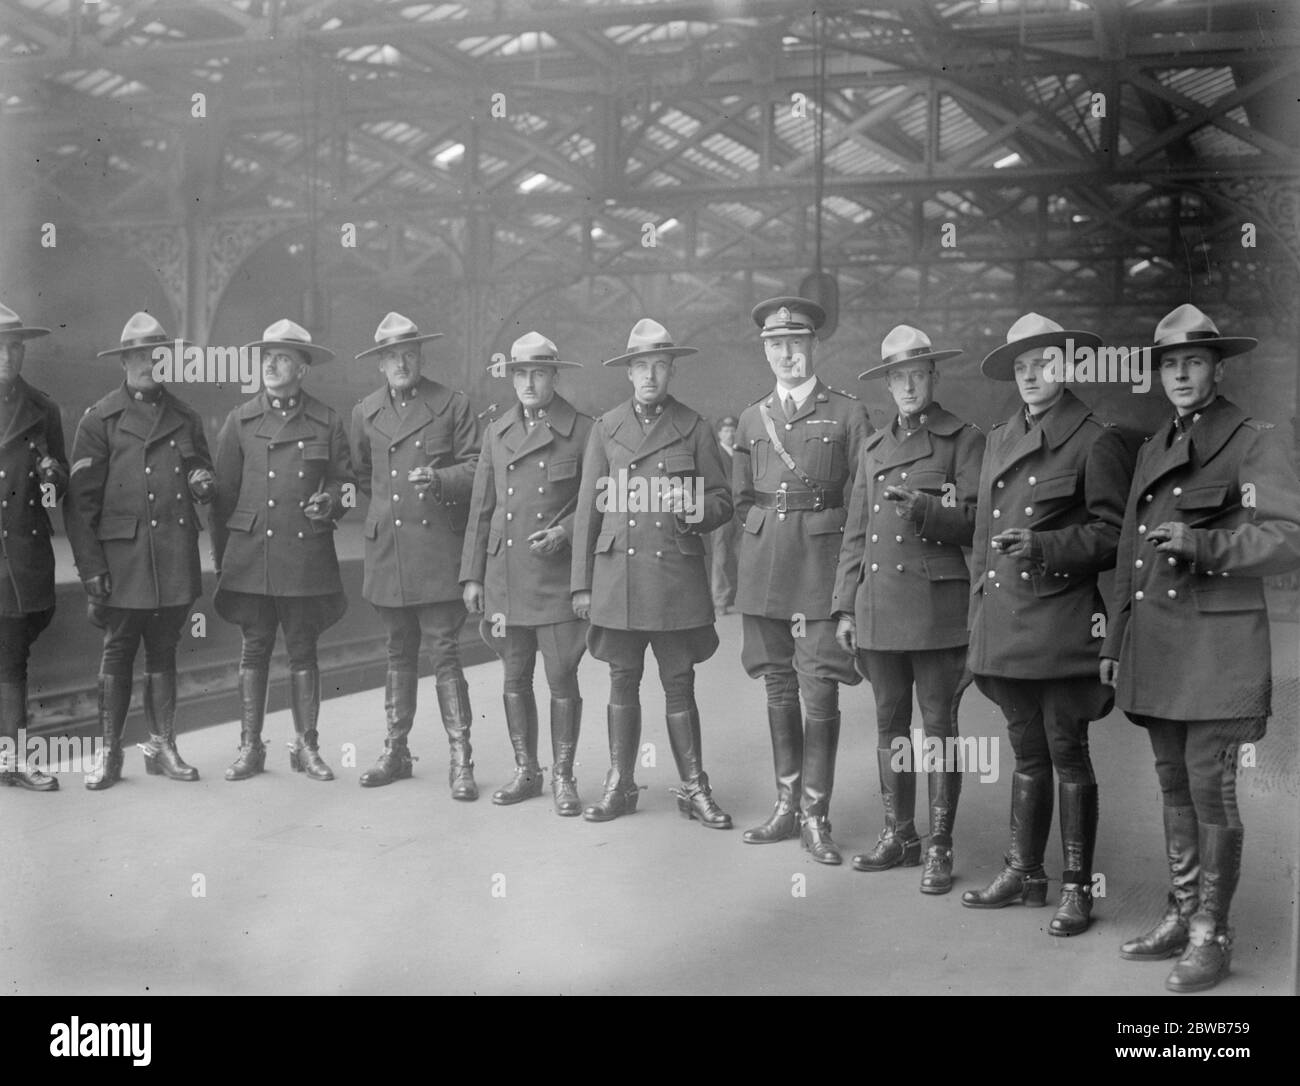 Police montée canadienne pour Wembley . L'inspecteur C H Smith ( au centre ) et d'autres membres de la police montée canadienne qui doivent comparaître à l'exposition Wembley , photographiés à leur arrivée à Waterloo . 28 mars 1924 Banque D'Images